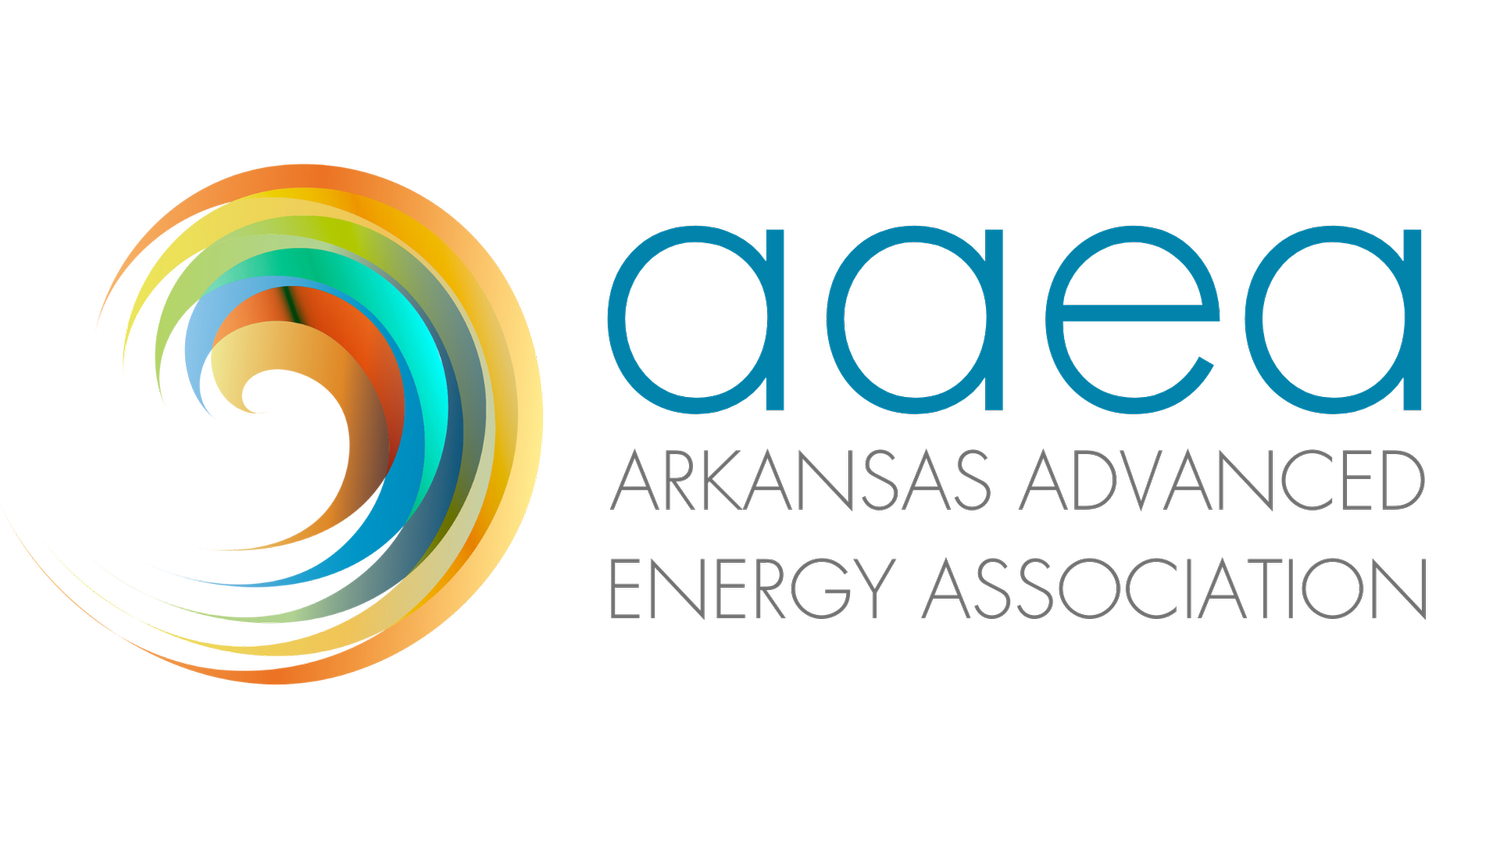 Arkansas Advanced Energy Association